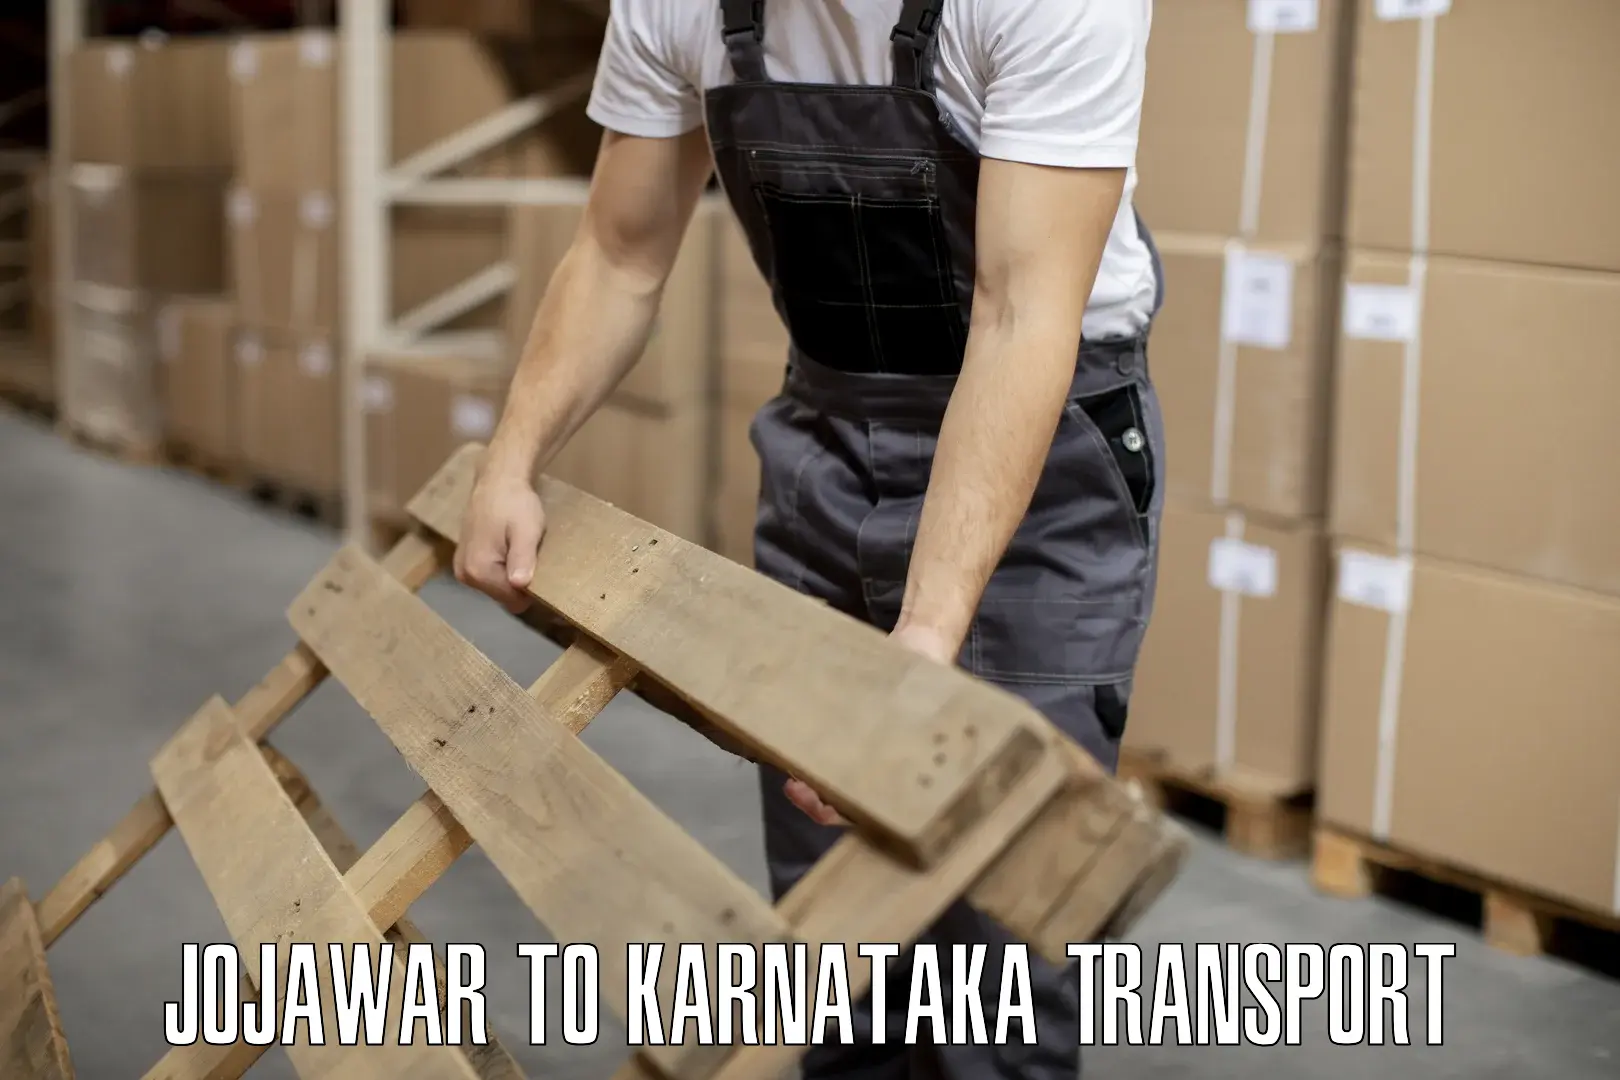 Transport in sharing in Jojawar to Kanjarakatte